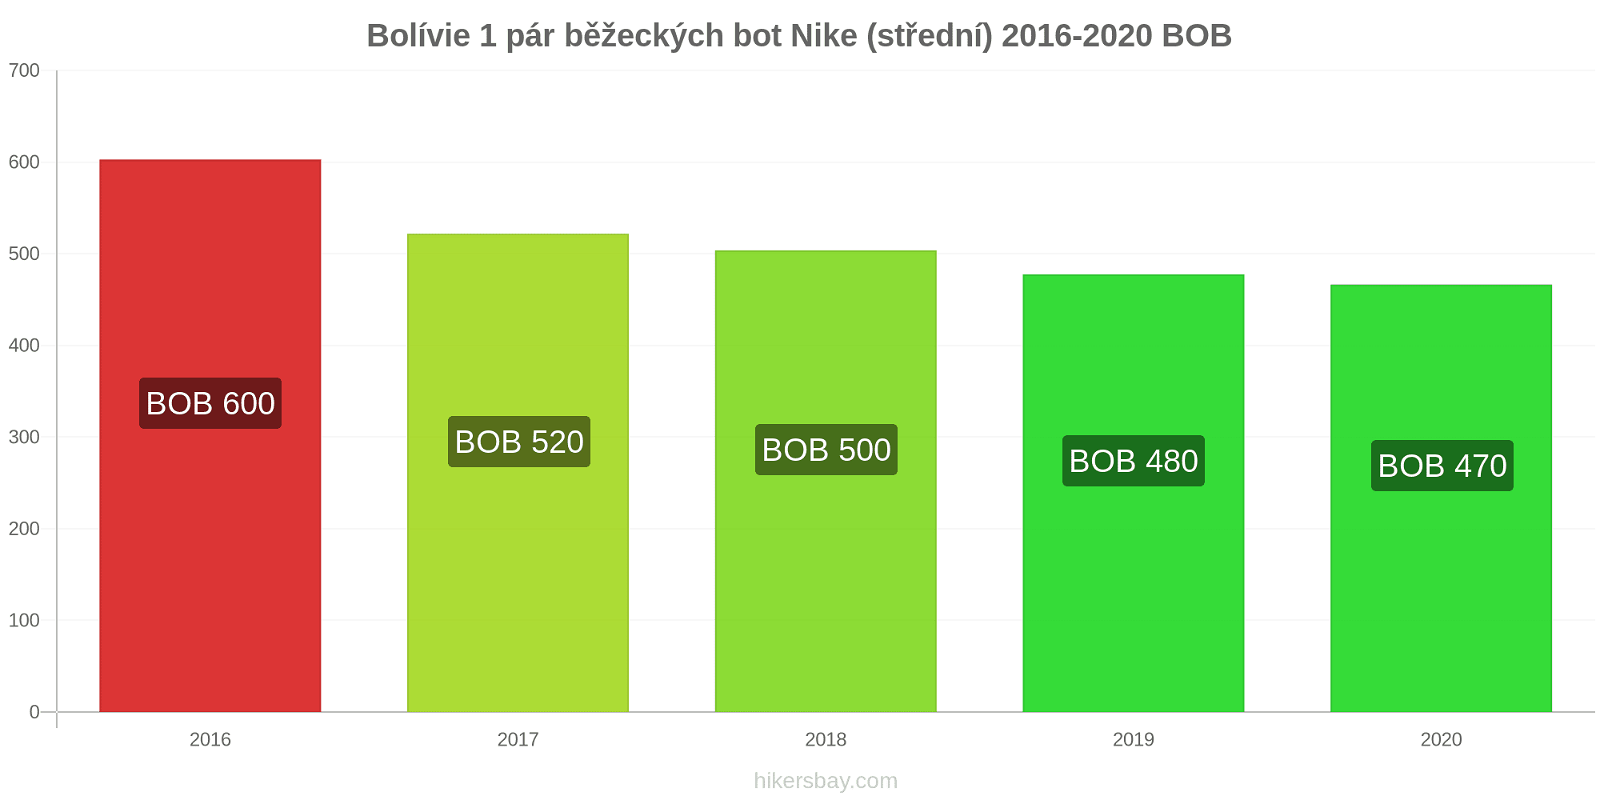 Bolívie změny cen 1 pár běžeckých bot Nike (střední) hikersbay.com